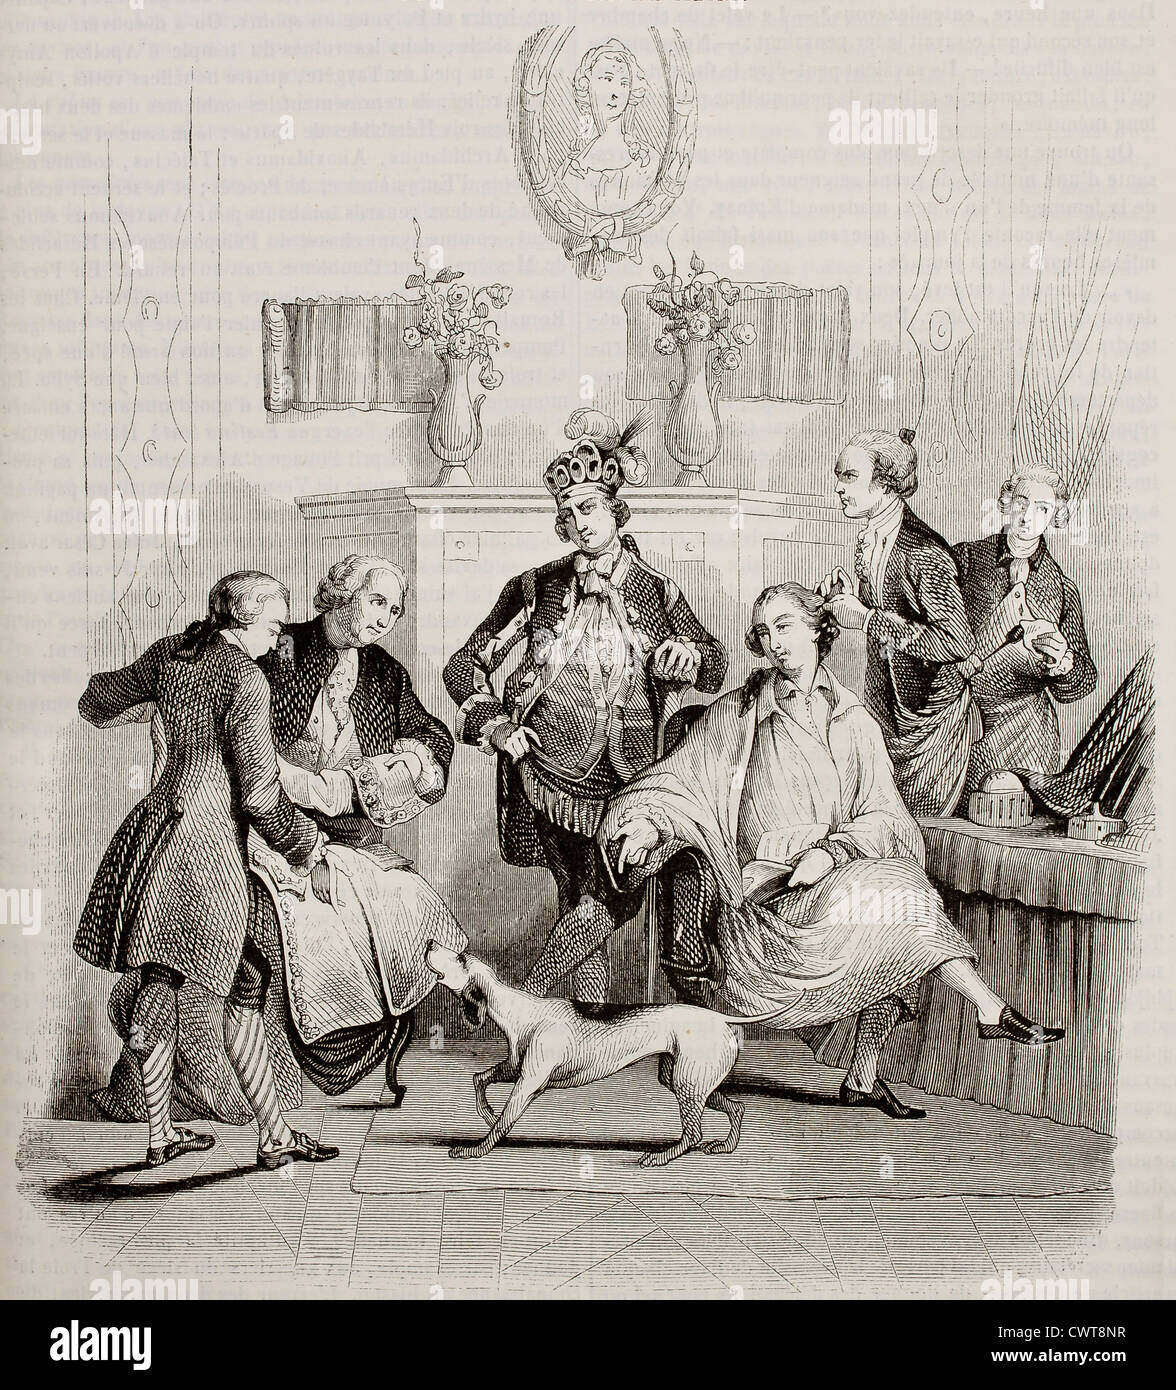 Coiffure aristocratique vieille illustration Banque D'Images